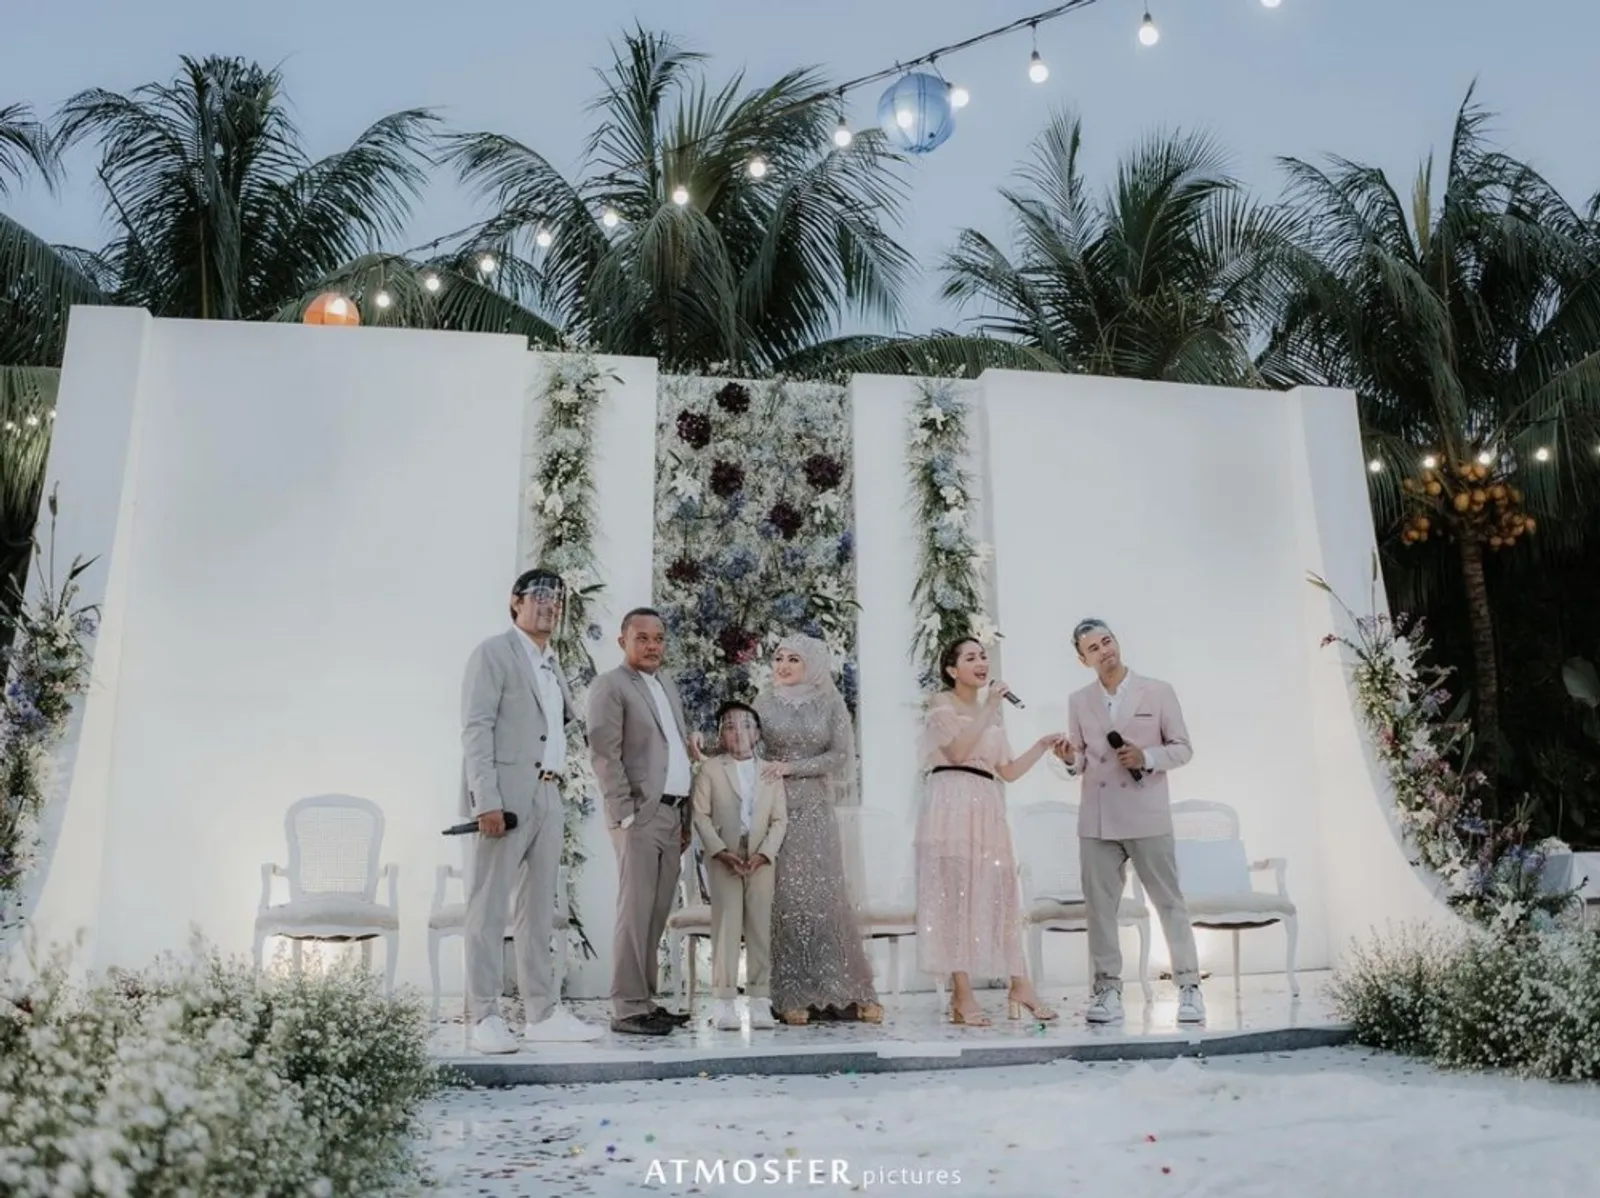 Cantik Banget! Intip 13 Dekorasi Pernikahan Artis Sepanjang Tahun 2020